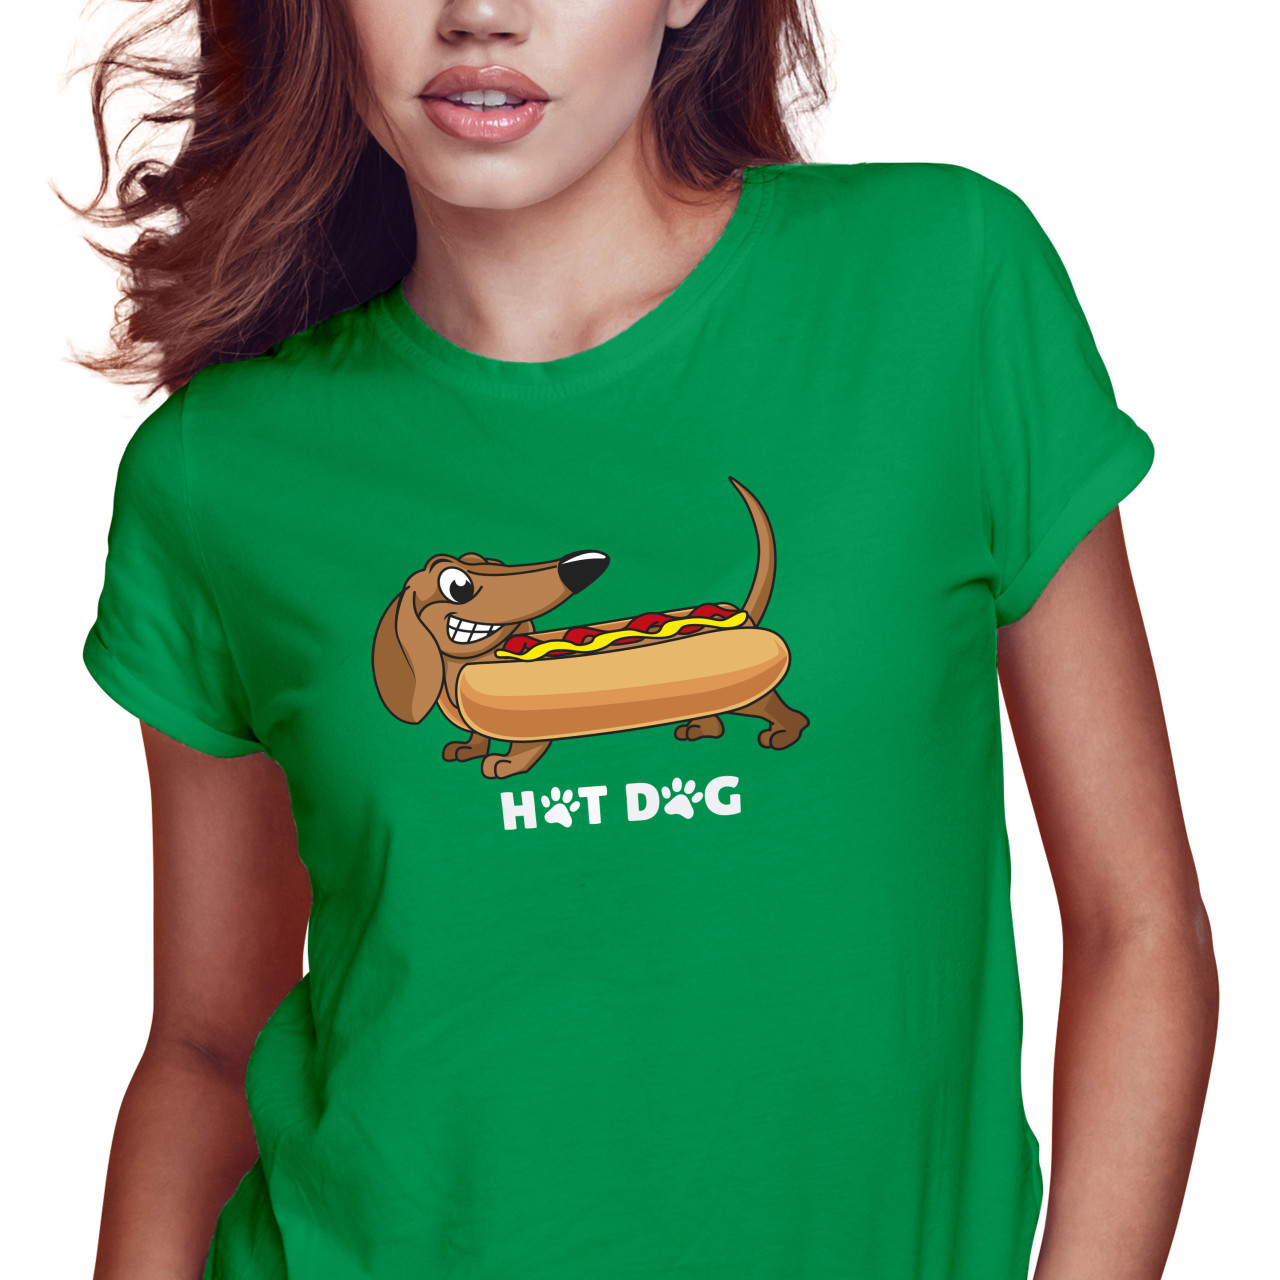 Dámské tričko s potiskem “Hot Dog”